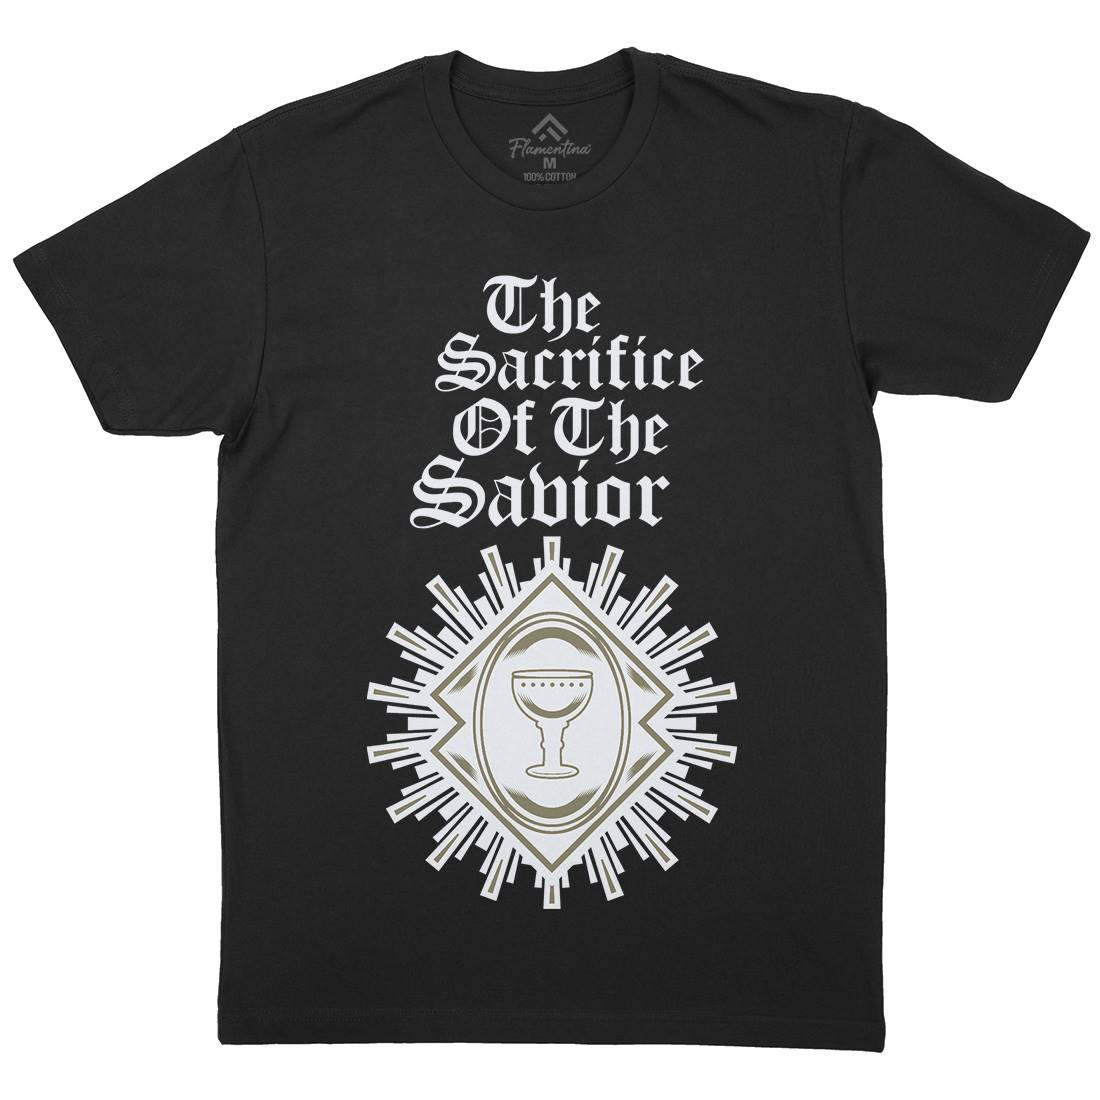 Sacrifice Of The Saviour Mens Organic Crew Neck T-Shirt Religion A385